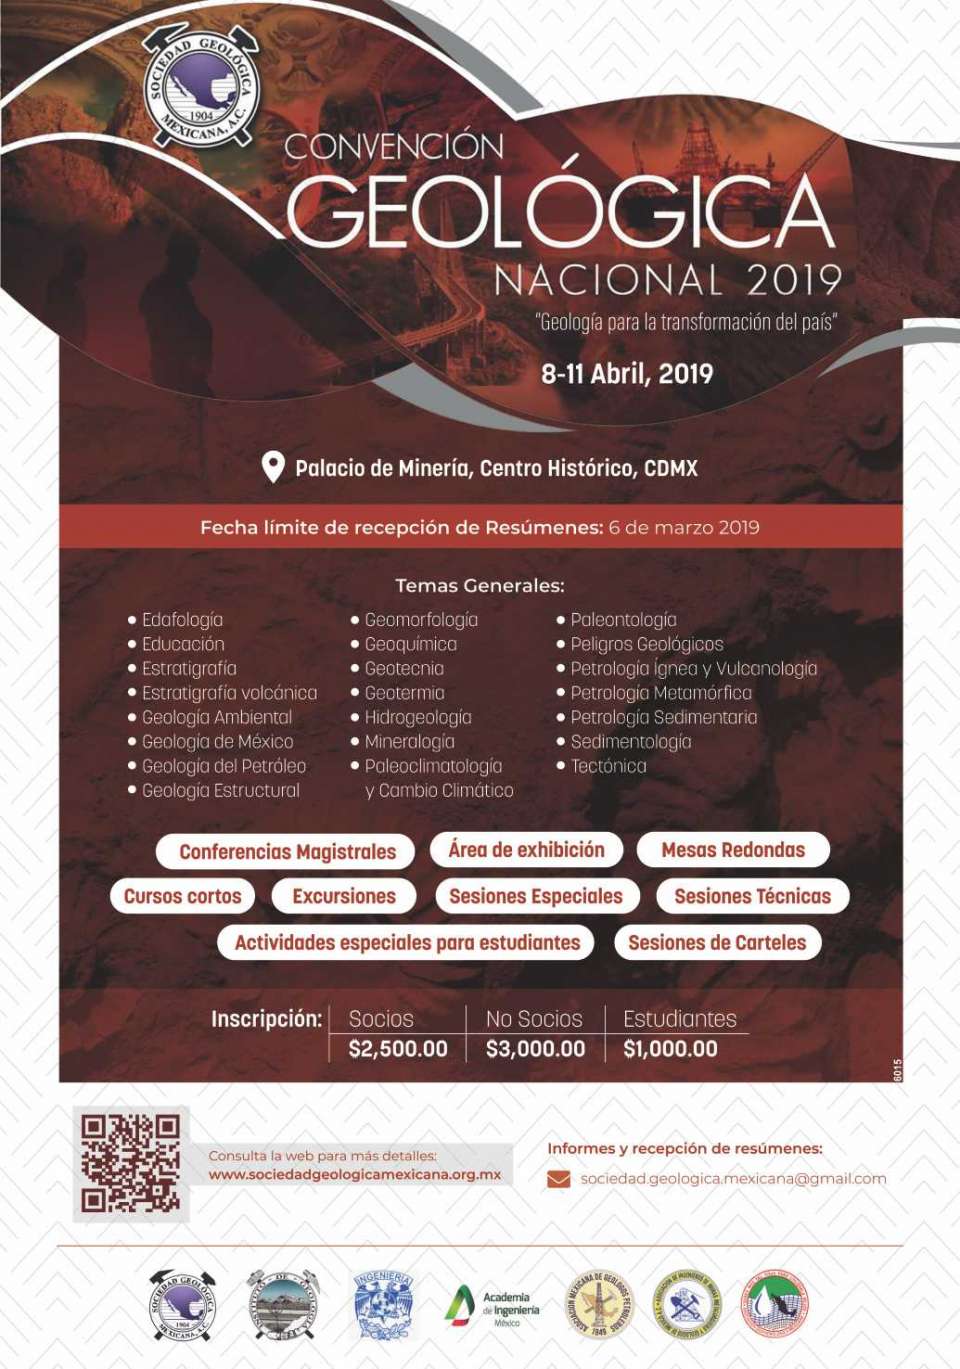 Del 8 al 11 de Abril 2019 en el Palacio de Mineria del Centro Historico, CDMX